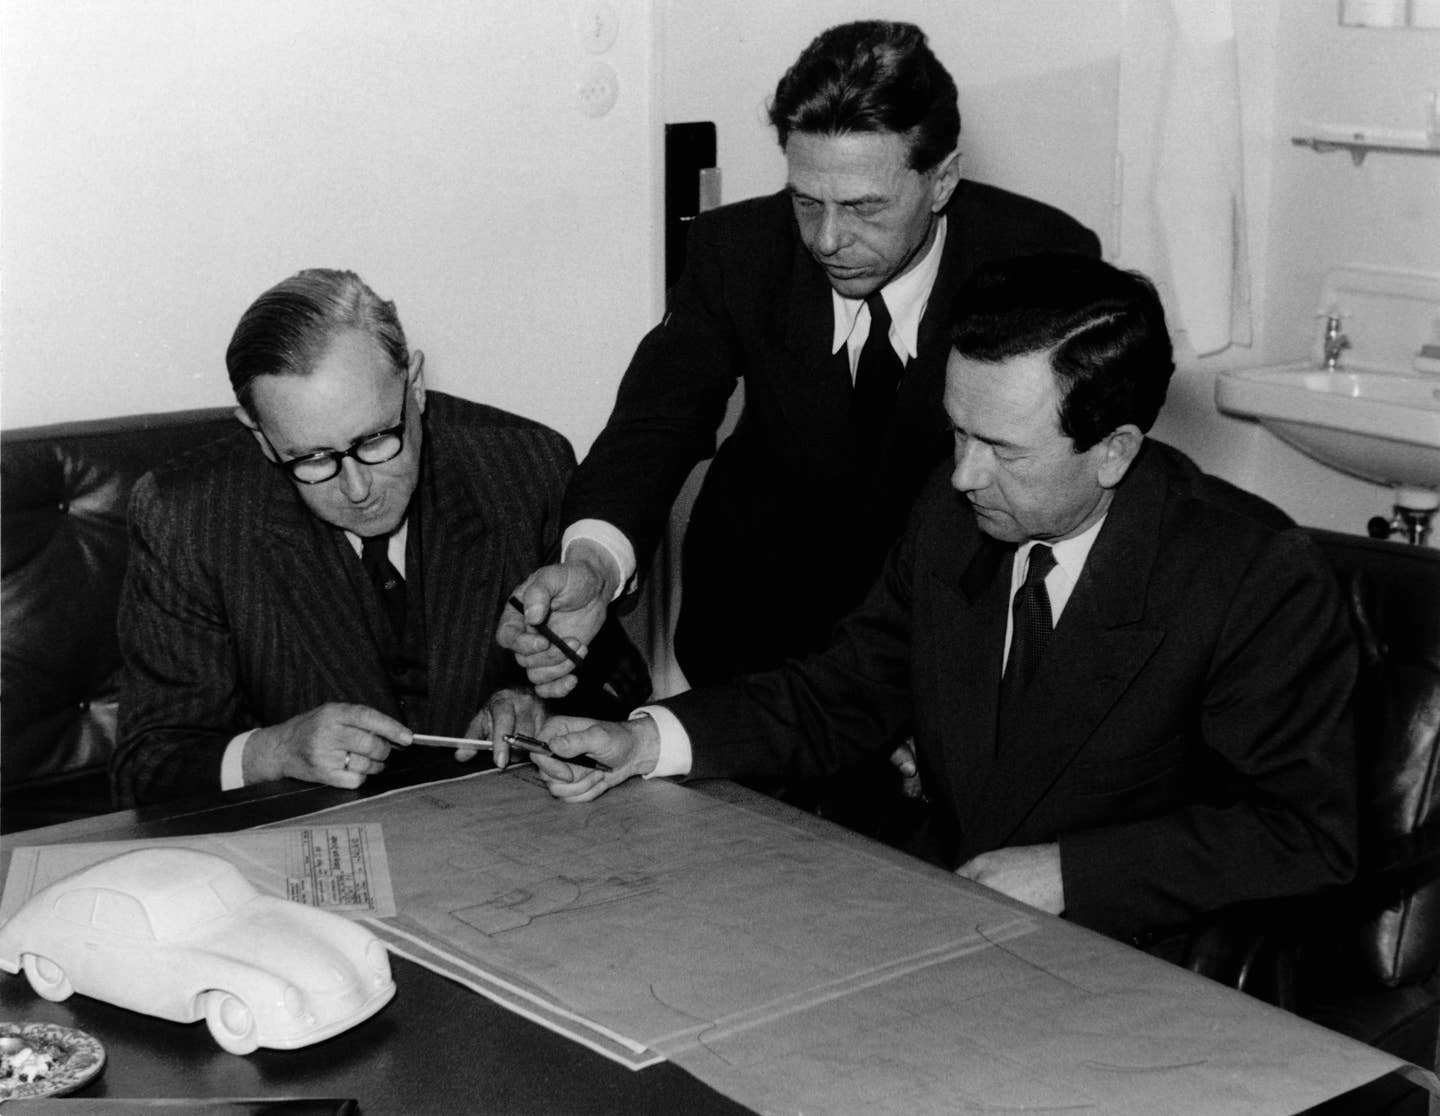 Ferry Porsche (left), Erwin Komenda (center) and Karl Rabe (right) working at Porsche